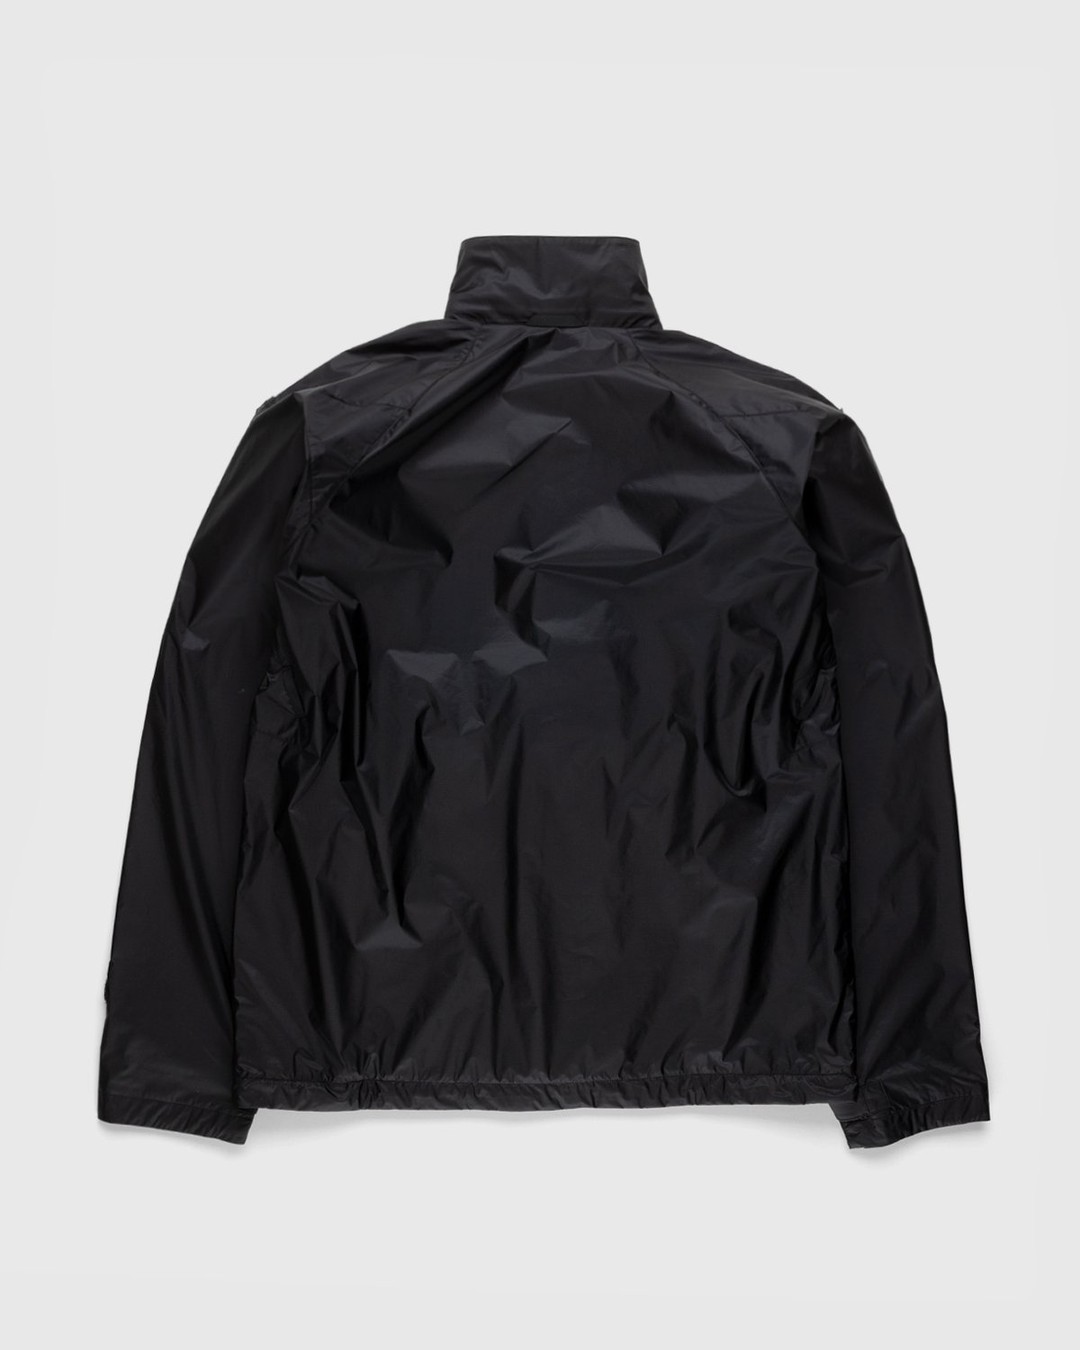 ACRONYM – J95-WS Jacket Black - Jackets - Black - Image 2